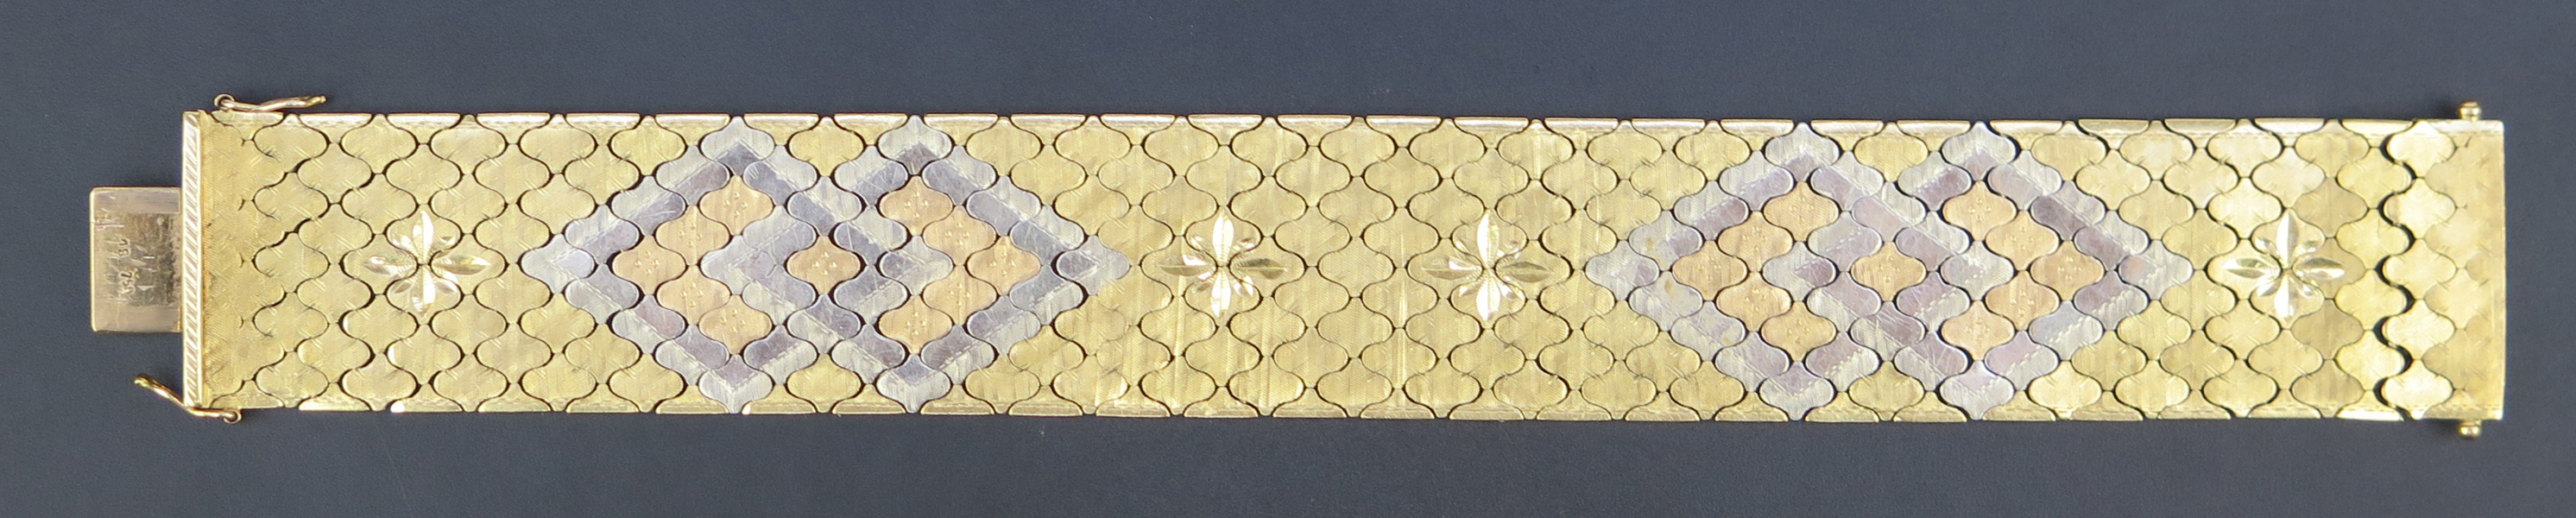 Armband, 18 karat rödguld en-deux-couleurs. Italien, 1900-talets mitt, l 20 cm, vikt 76,4_31409a_8dbae1add0d3354_lg.jpeg